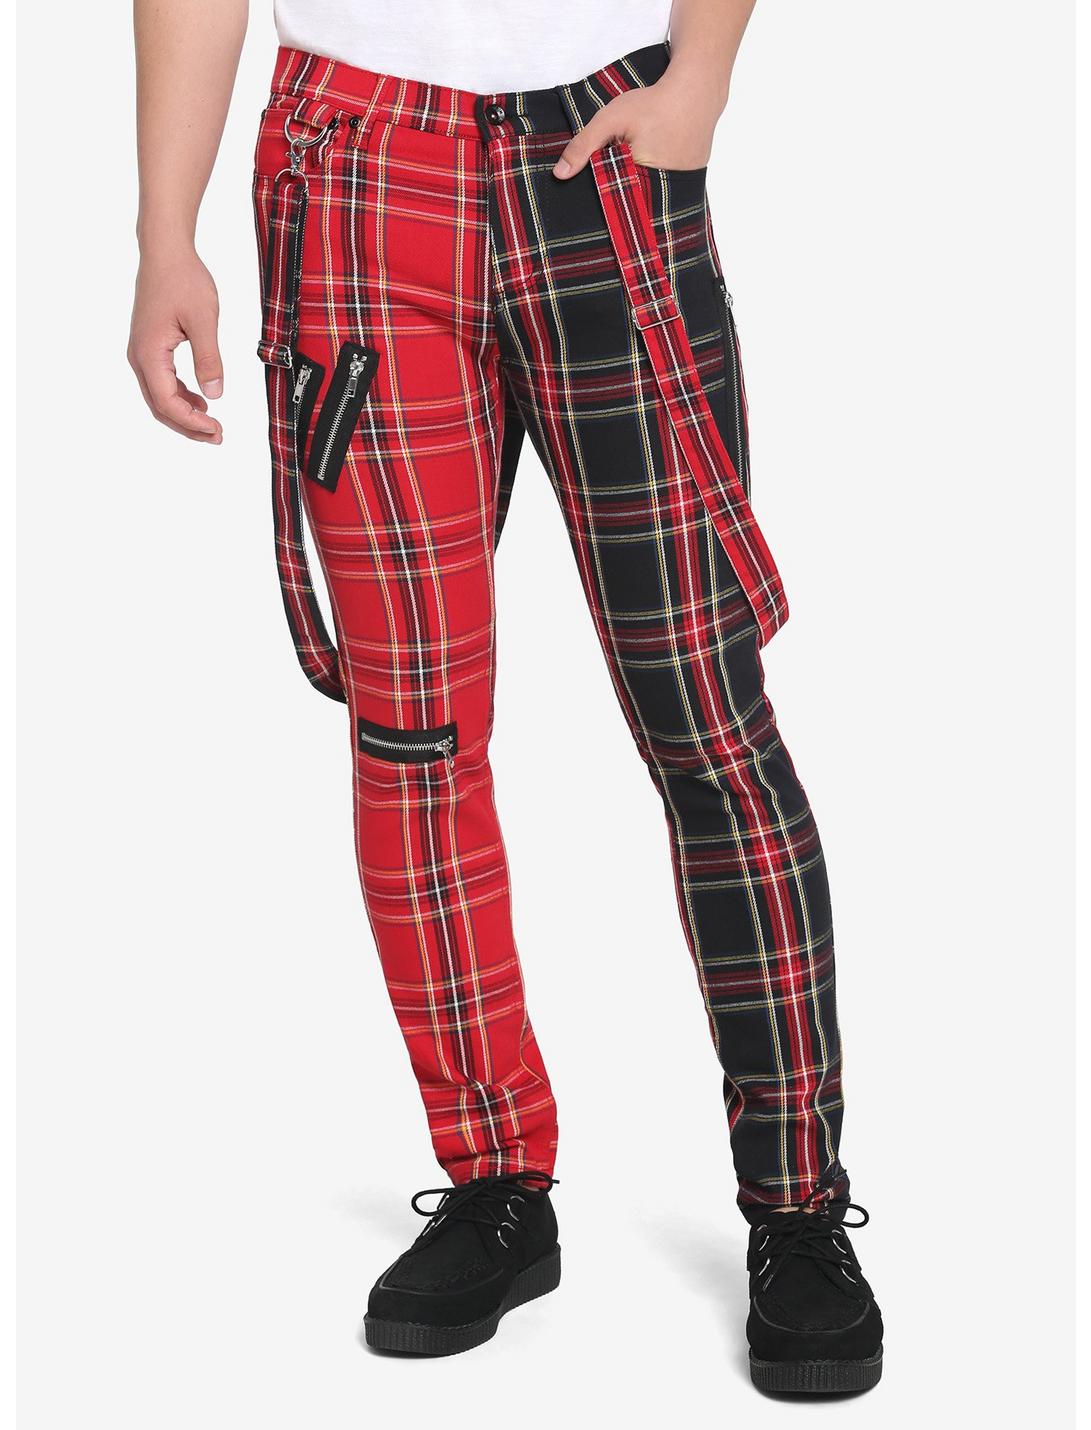 HT Denim Red & Black Double Plaid Suspender Stinger Jeans, BLACK  RED, hi-res